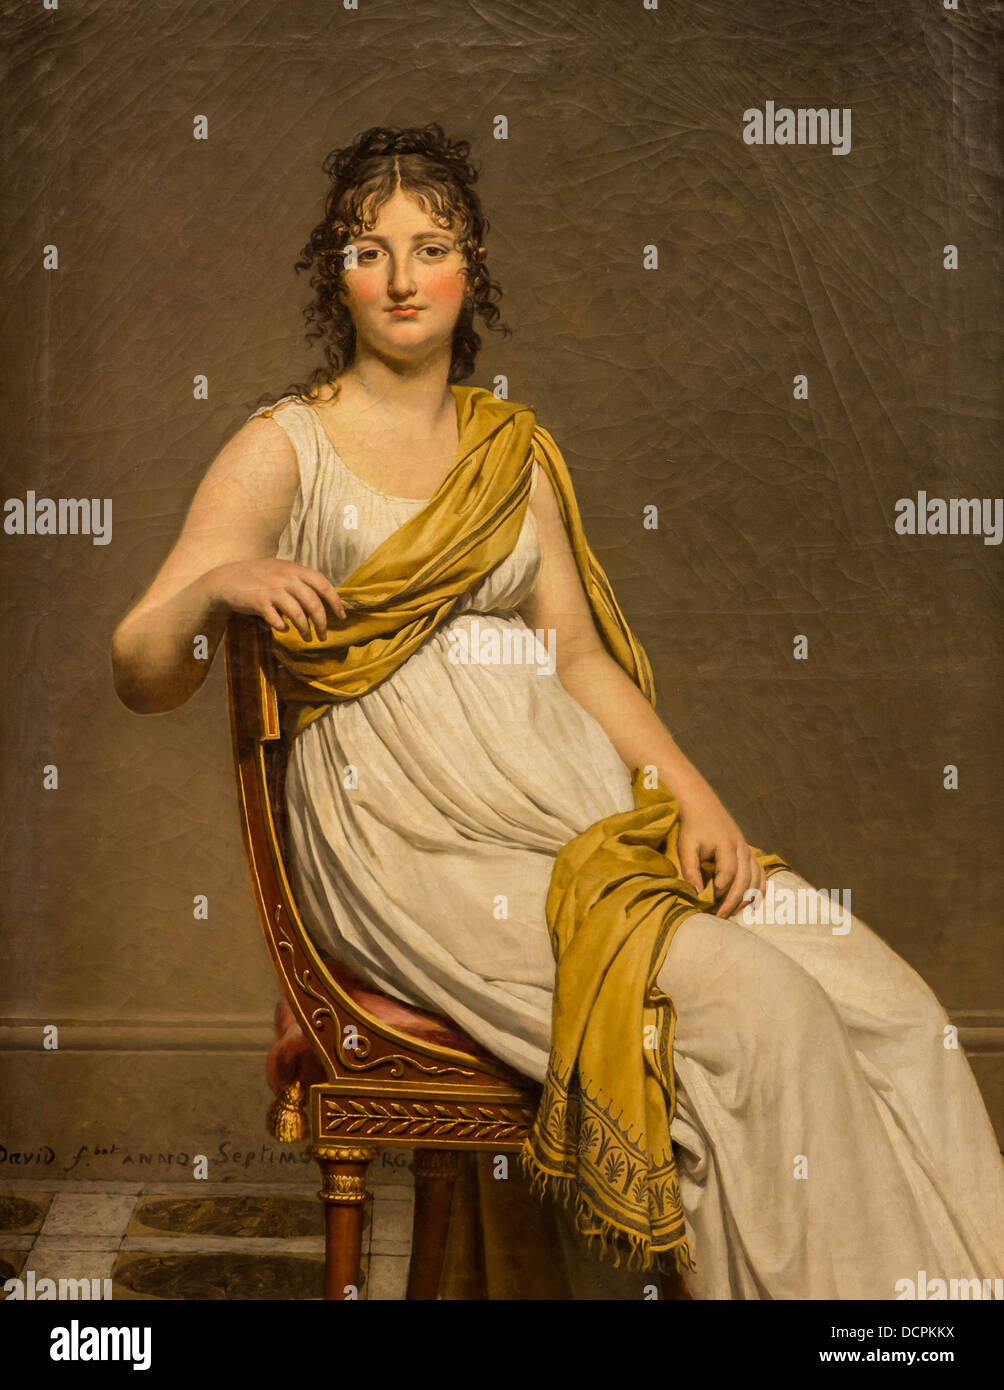 Il XVIII secolo - Madame Raymond de Verninac, sorella del pittore Eugène Delacroix, 1798 - Jacques-Louis David Philippe Sauvan- Foto Stock